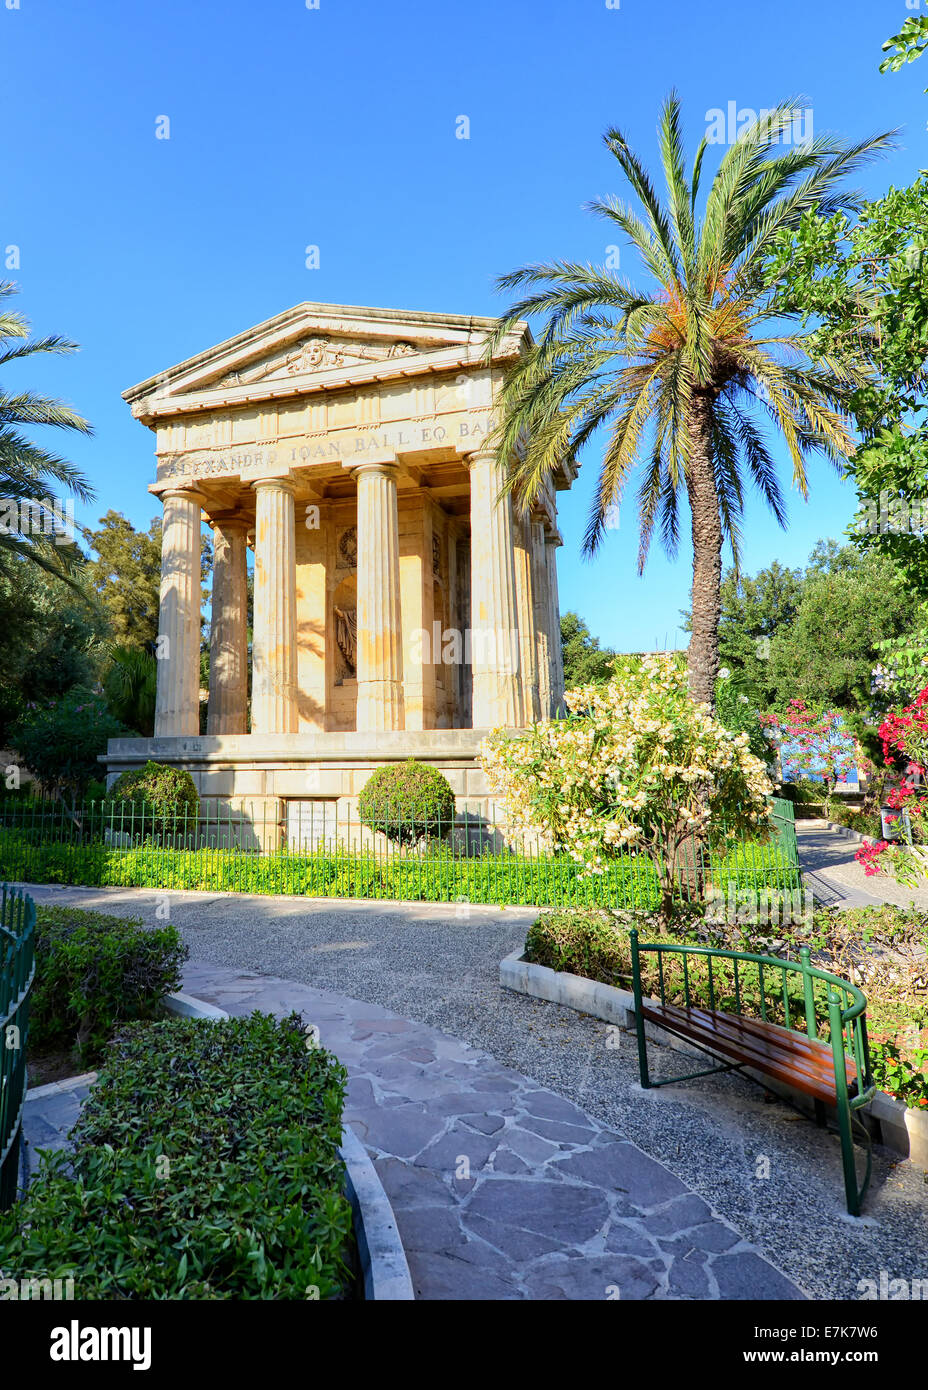 Lower Barrakka Gardens in Valletta, Malta Stock Photo